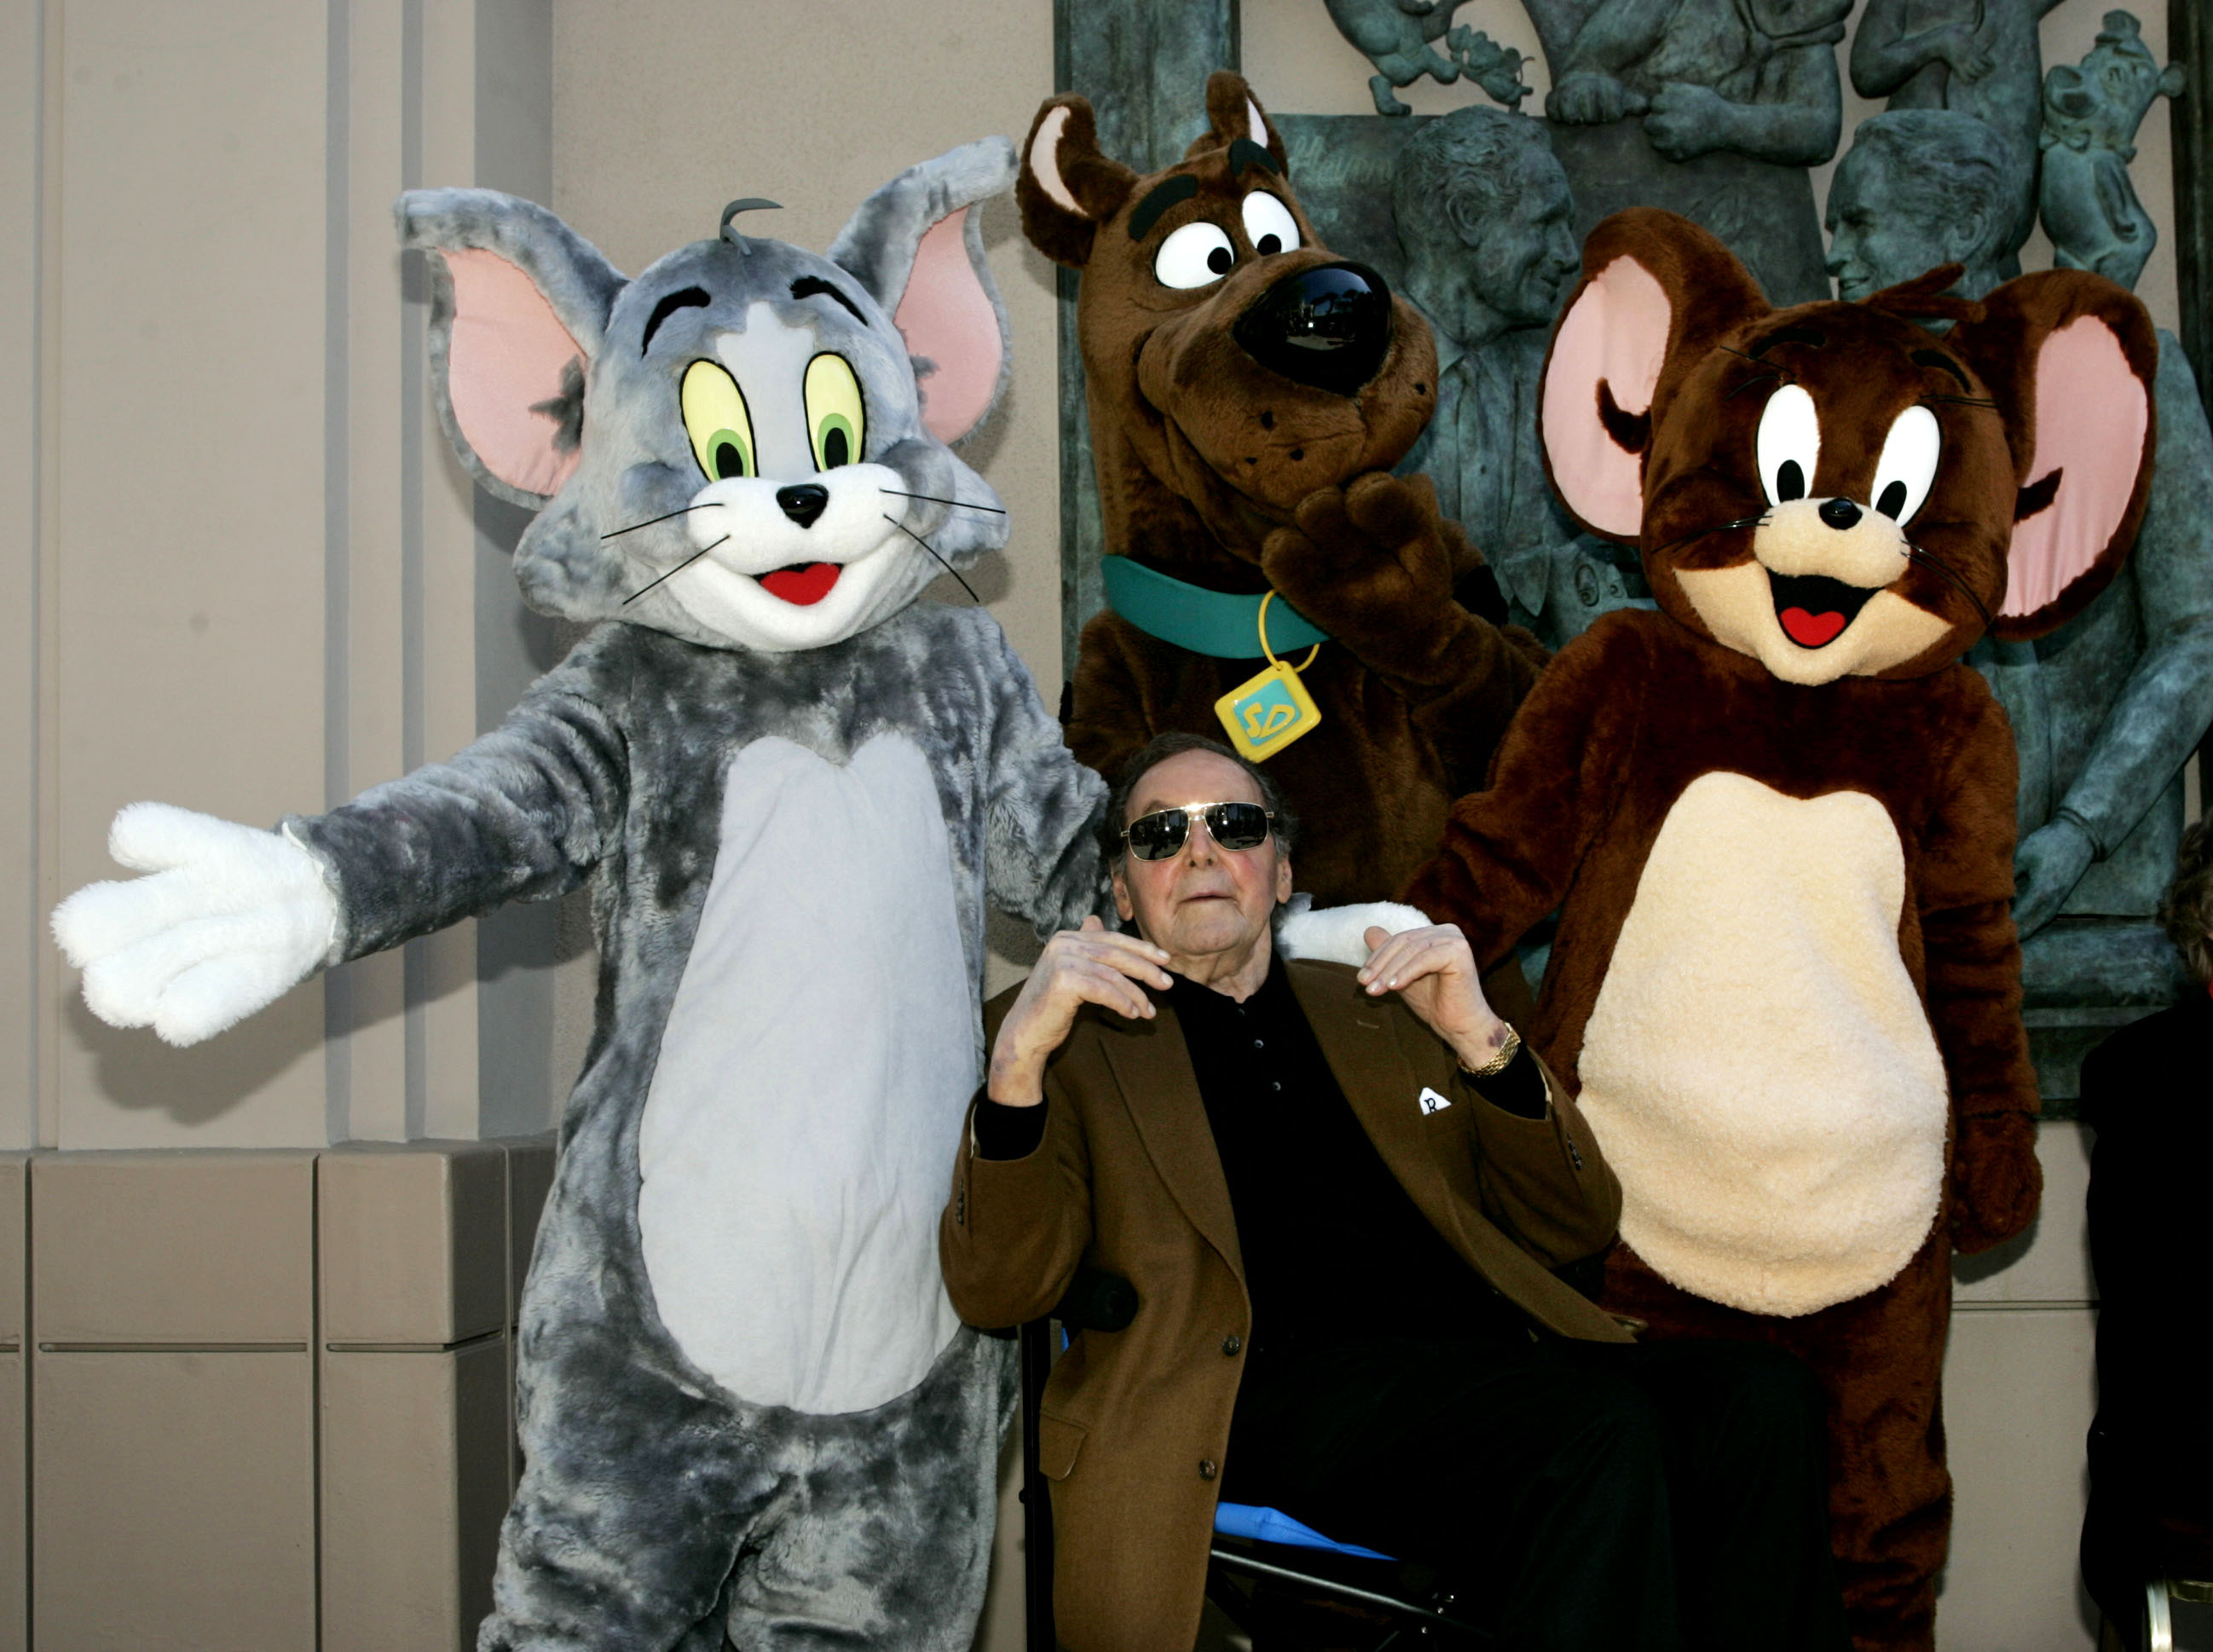 Las travesuras del gato y el ratón regresan en nueva película de “Tom & Jerry”